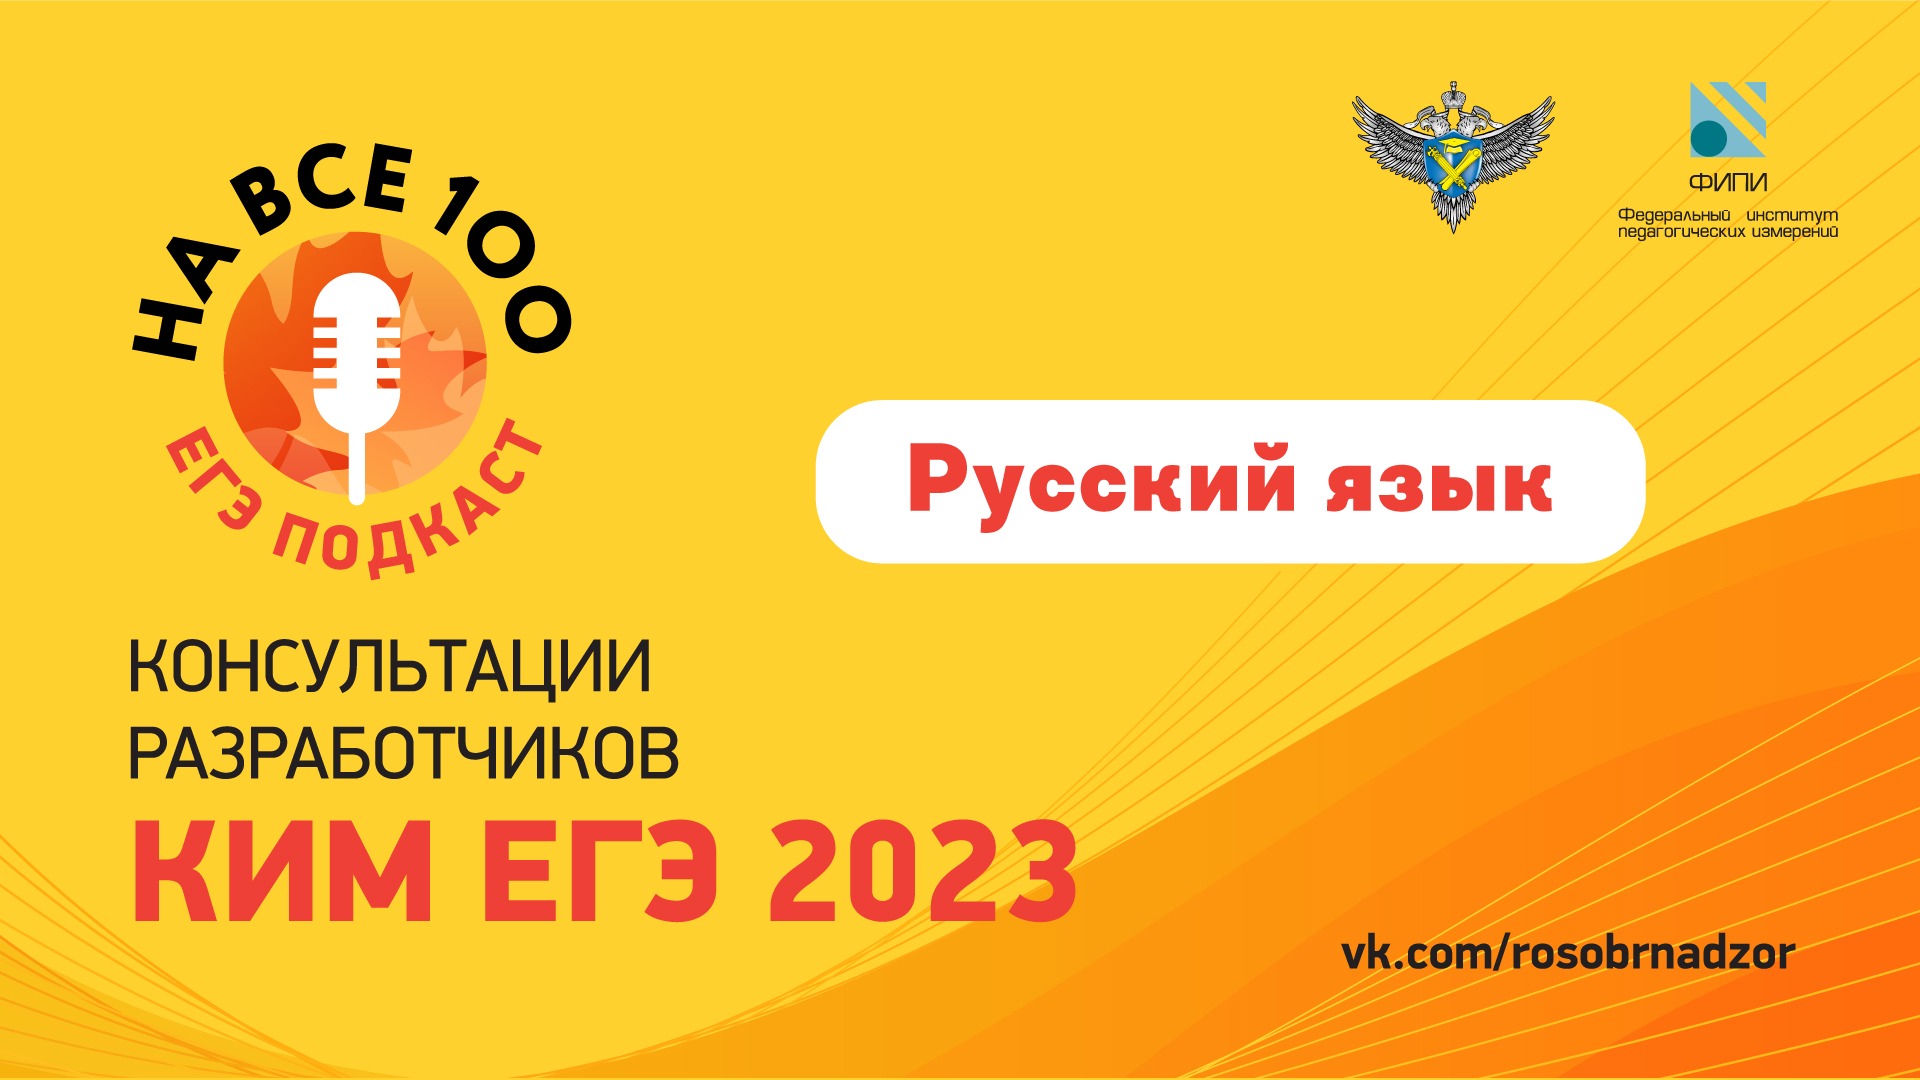 ЕГЭ-подкаст «На все 100!» о подготовке к экзамену по русскому языку